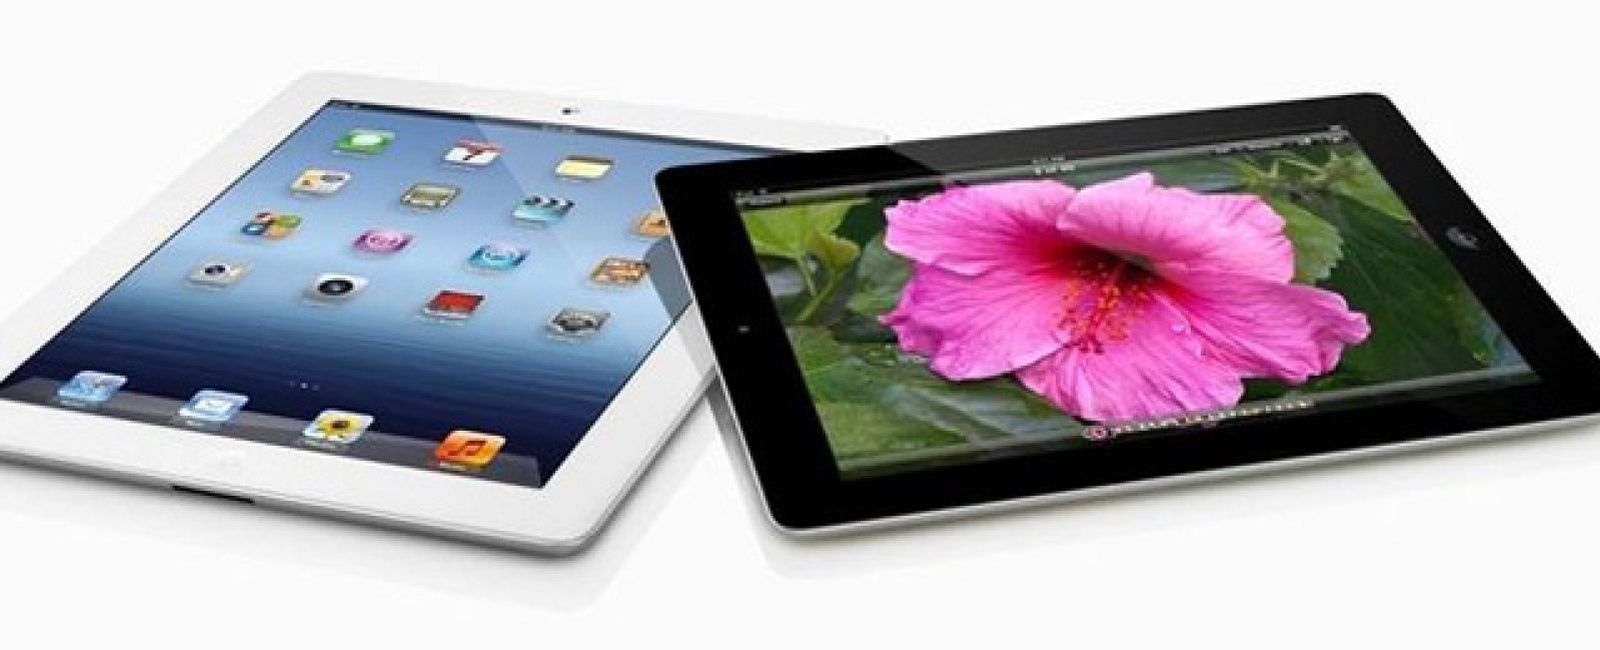 Foto: Tuenti Móvil apuesta fuerte por las tabletas e incluye el nuevo iPad en su catálogo